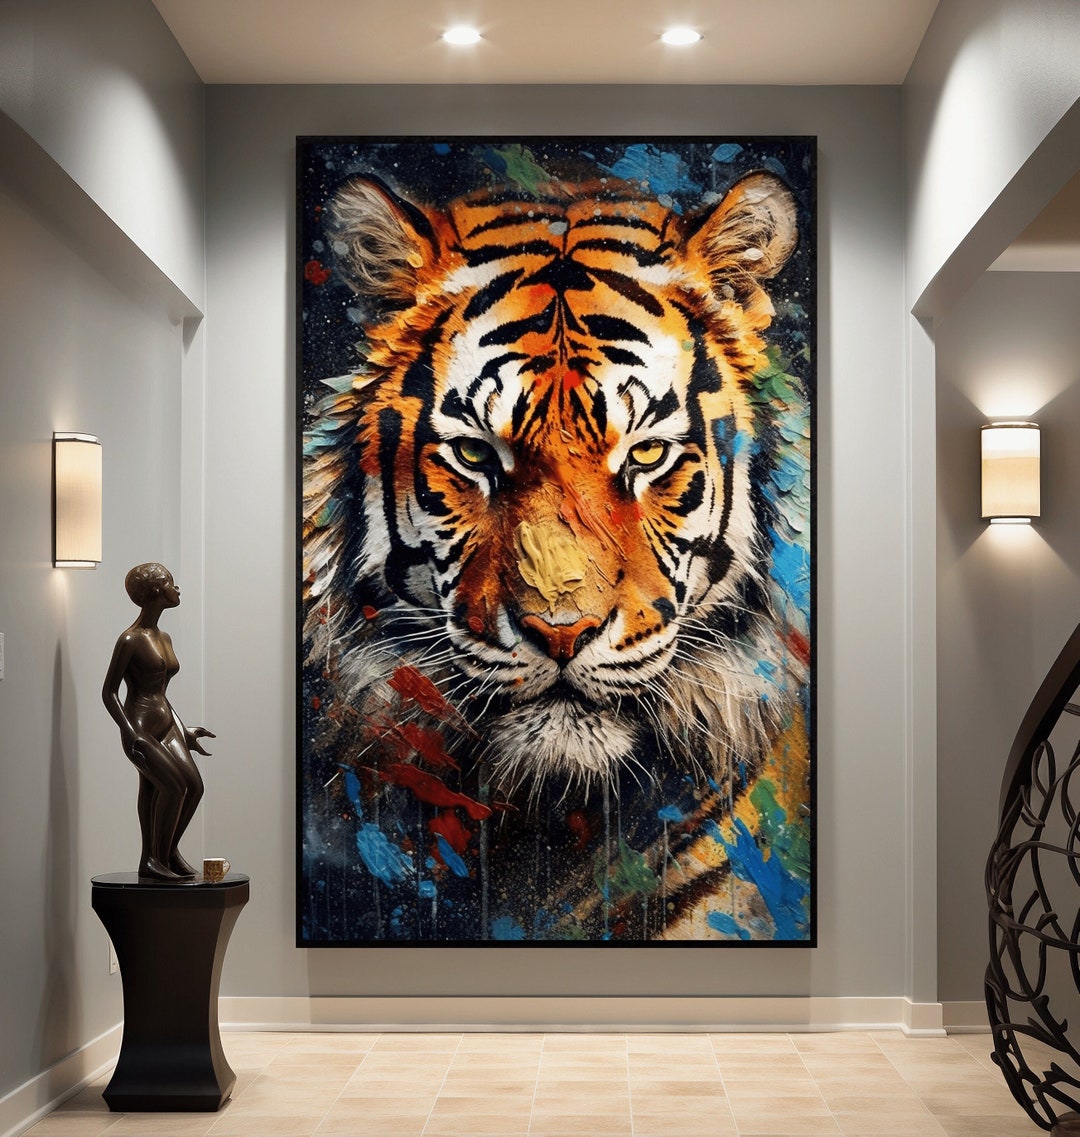 Tiger Wall Art Framed Poster, Tiger, Tiger Painting, Tiger Wall Art ...